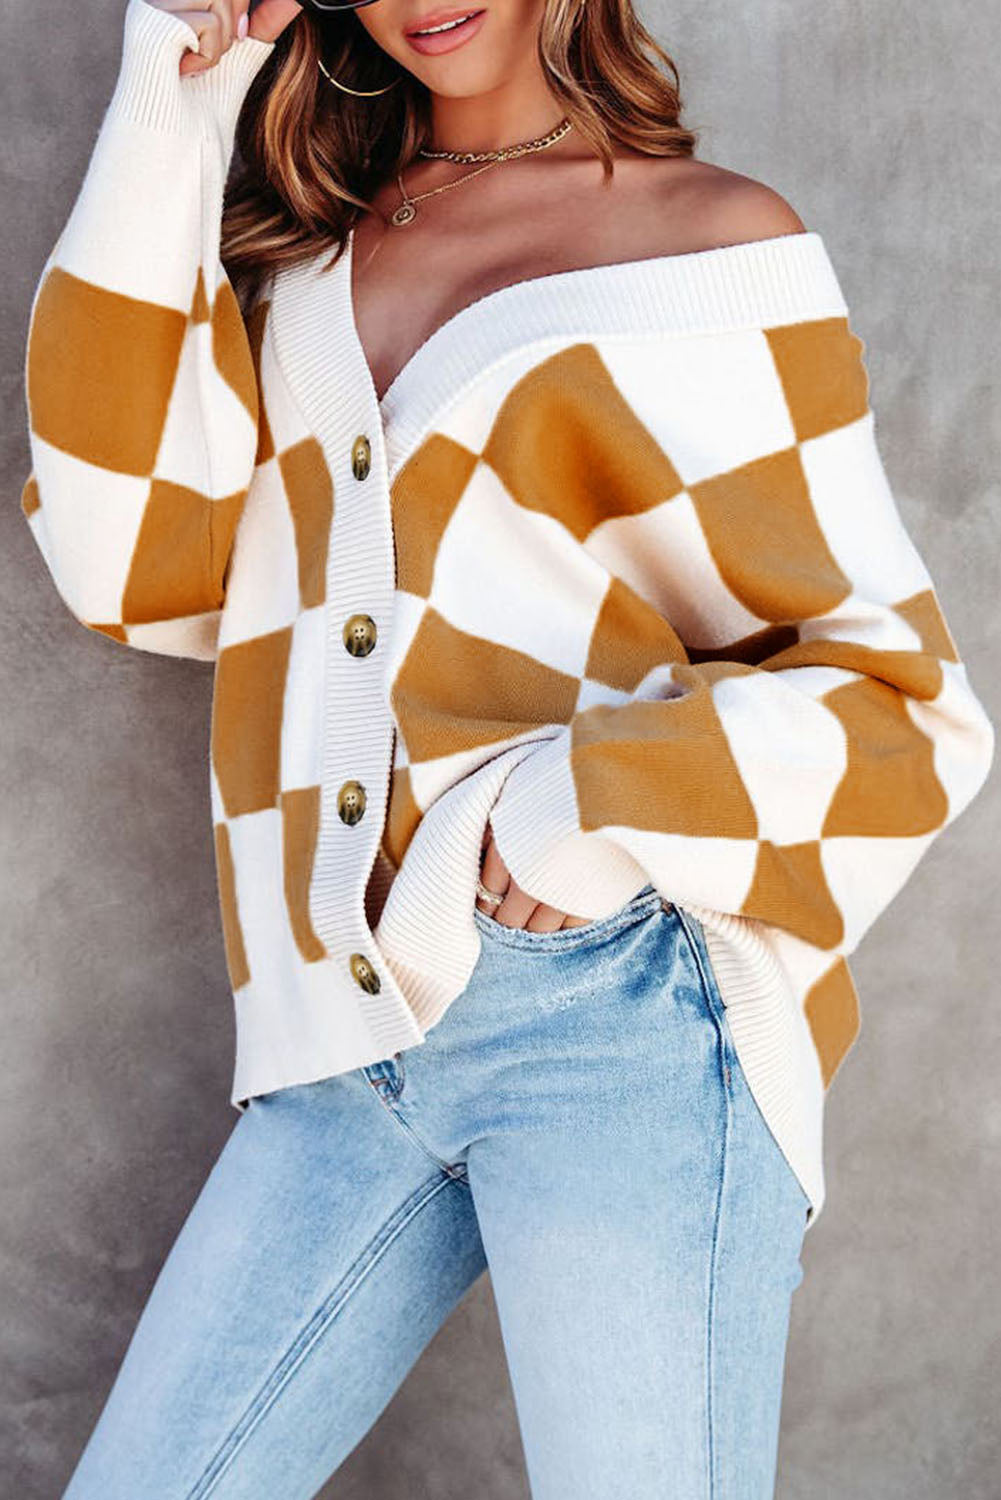 Brauner Pullover-Cardigan mit Knopfleiste und kontrastierendem Karomuster